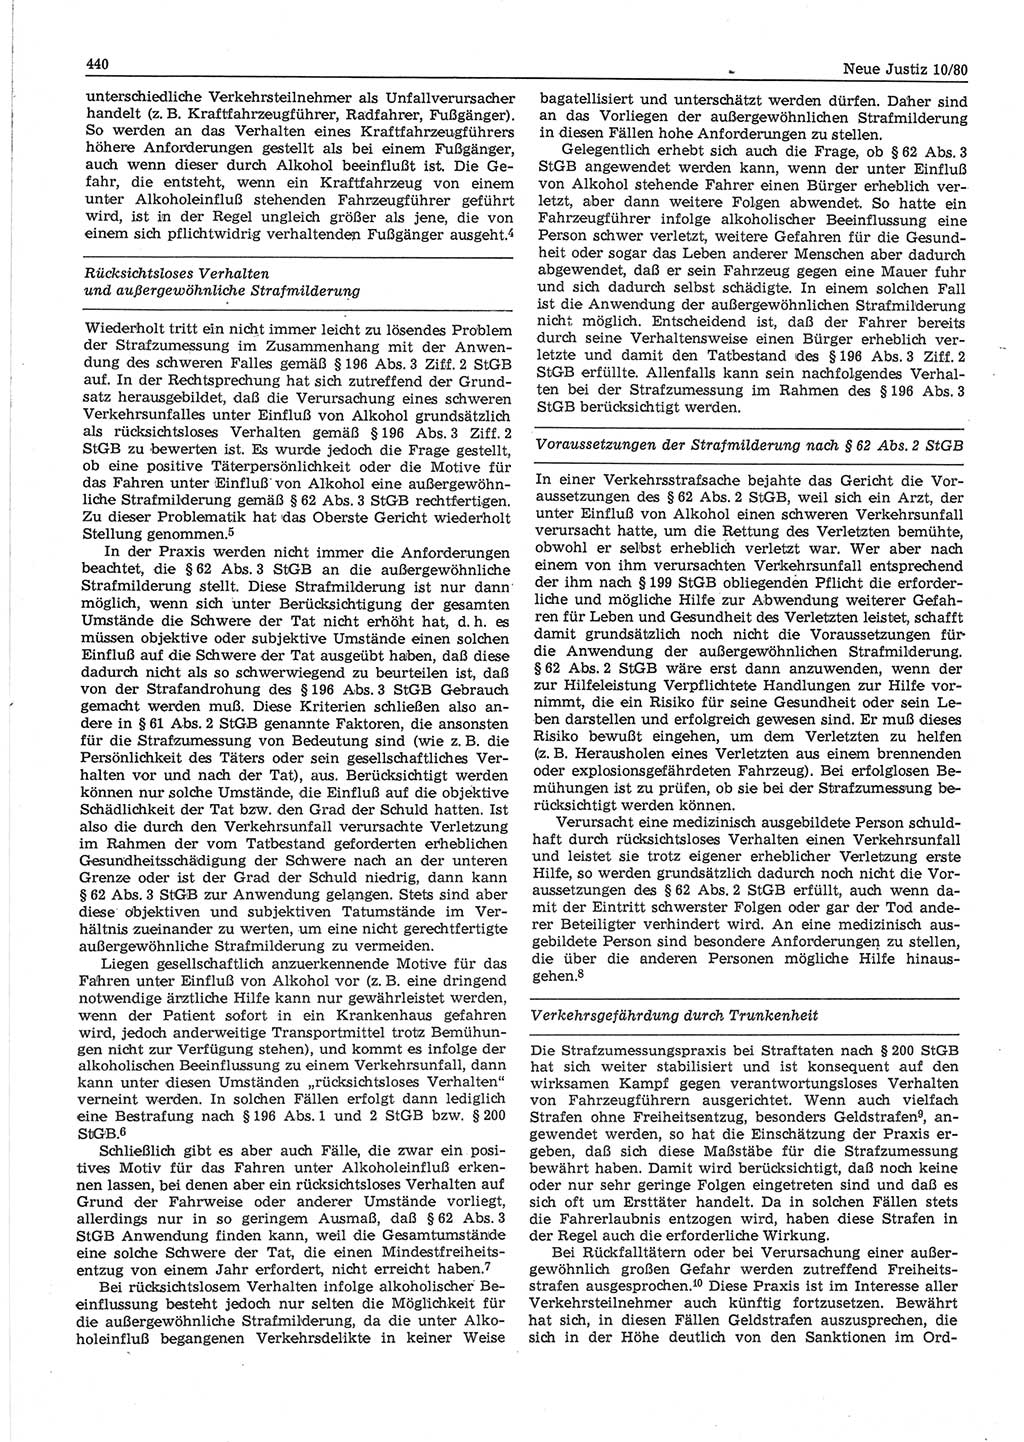 Neue Justiz (NJ), Zeitschrift für sozialistisches Recht und Gesetzlichkeit [Deutsche Demokratische Republik (DDR)], 34. Jahrgang 1980, Seite 440 (NJ DDR 1980, S. 440)